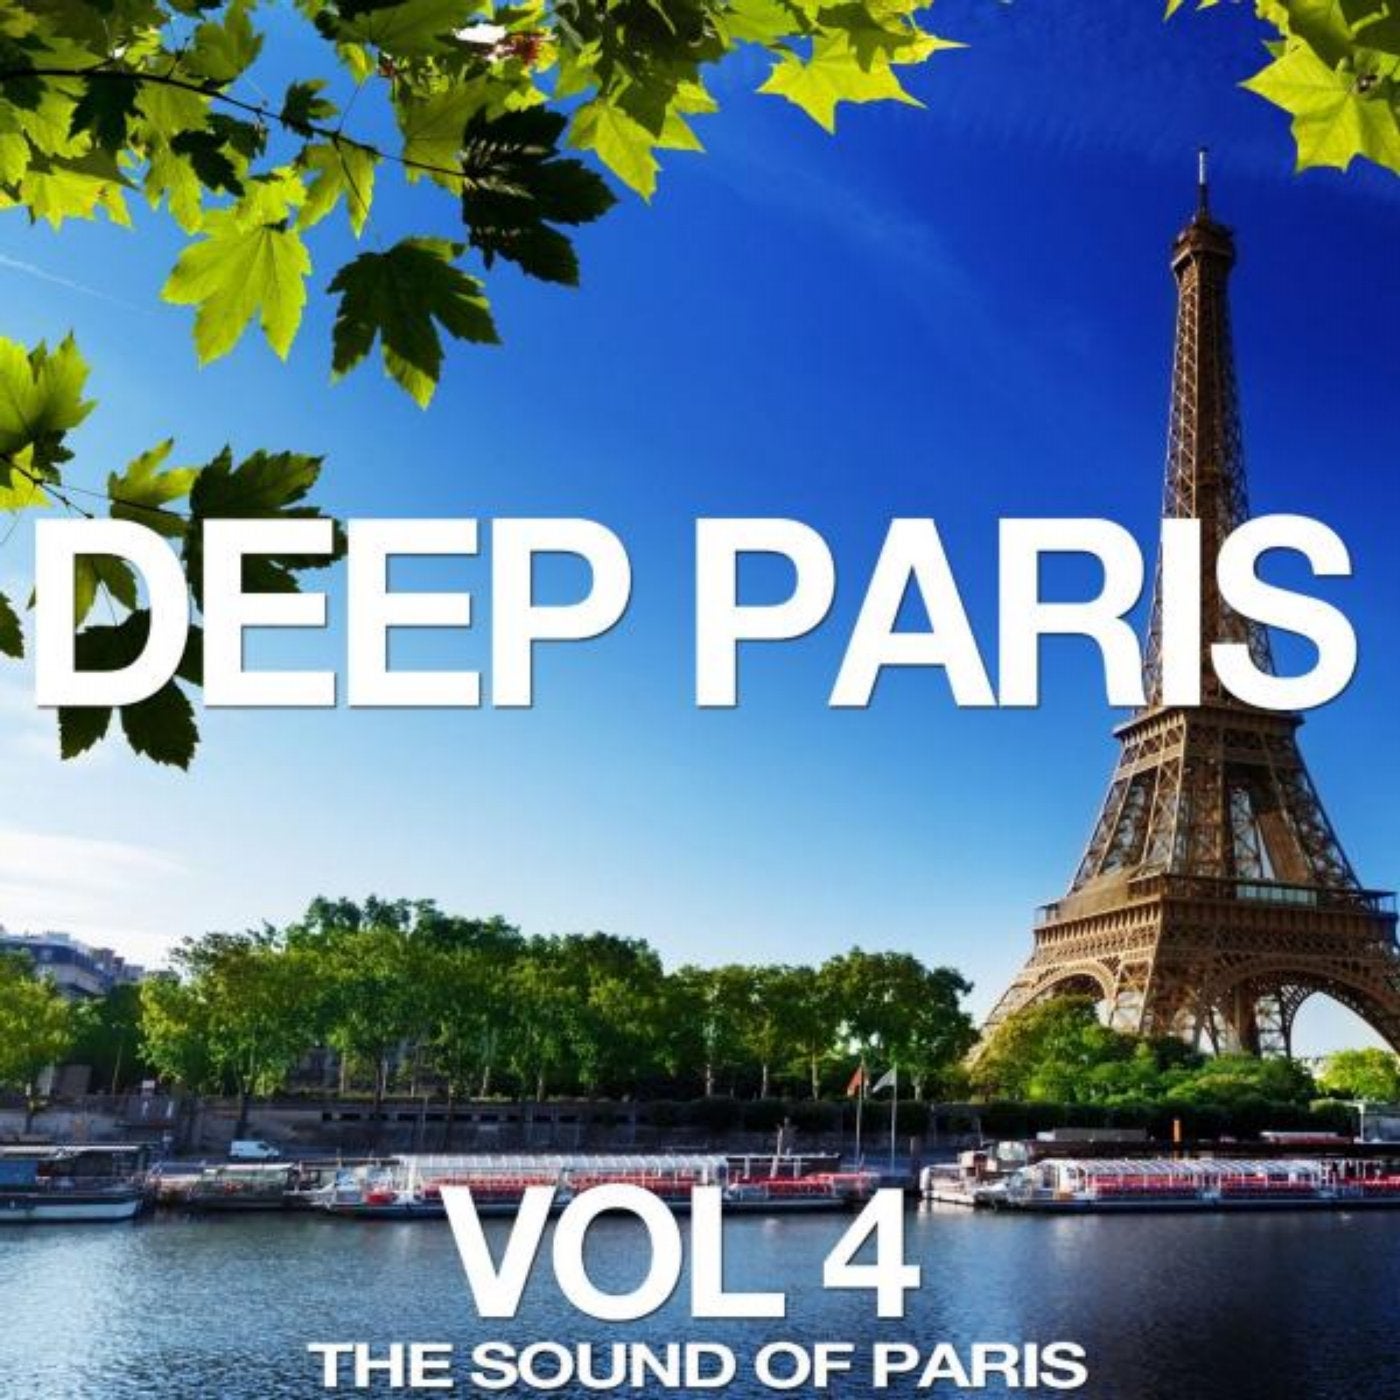 Deep Paris, Vol. 4 (The Sound of Paris)